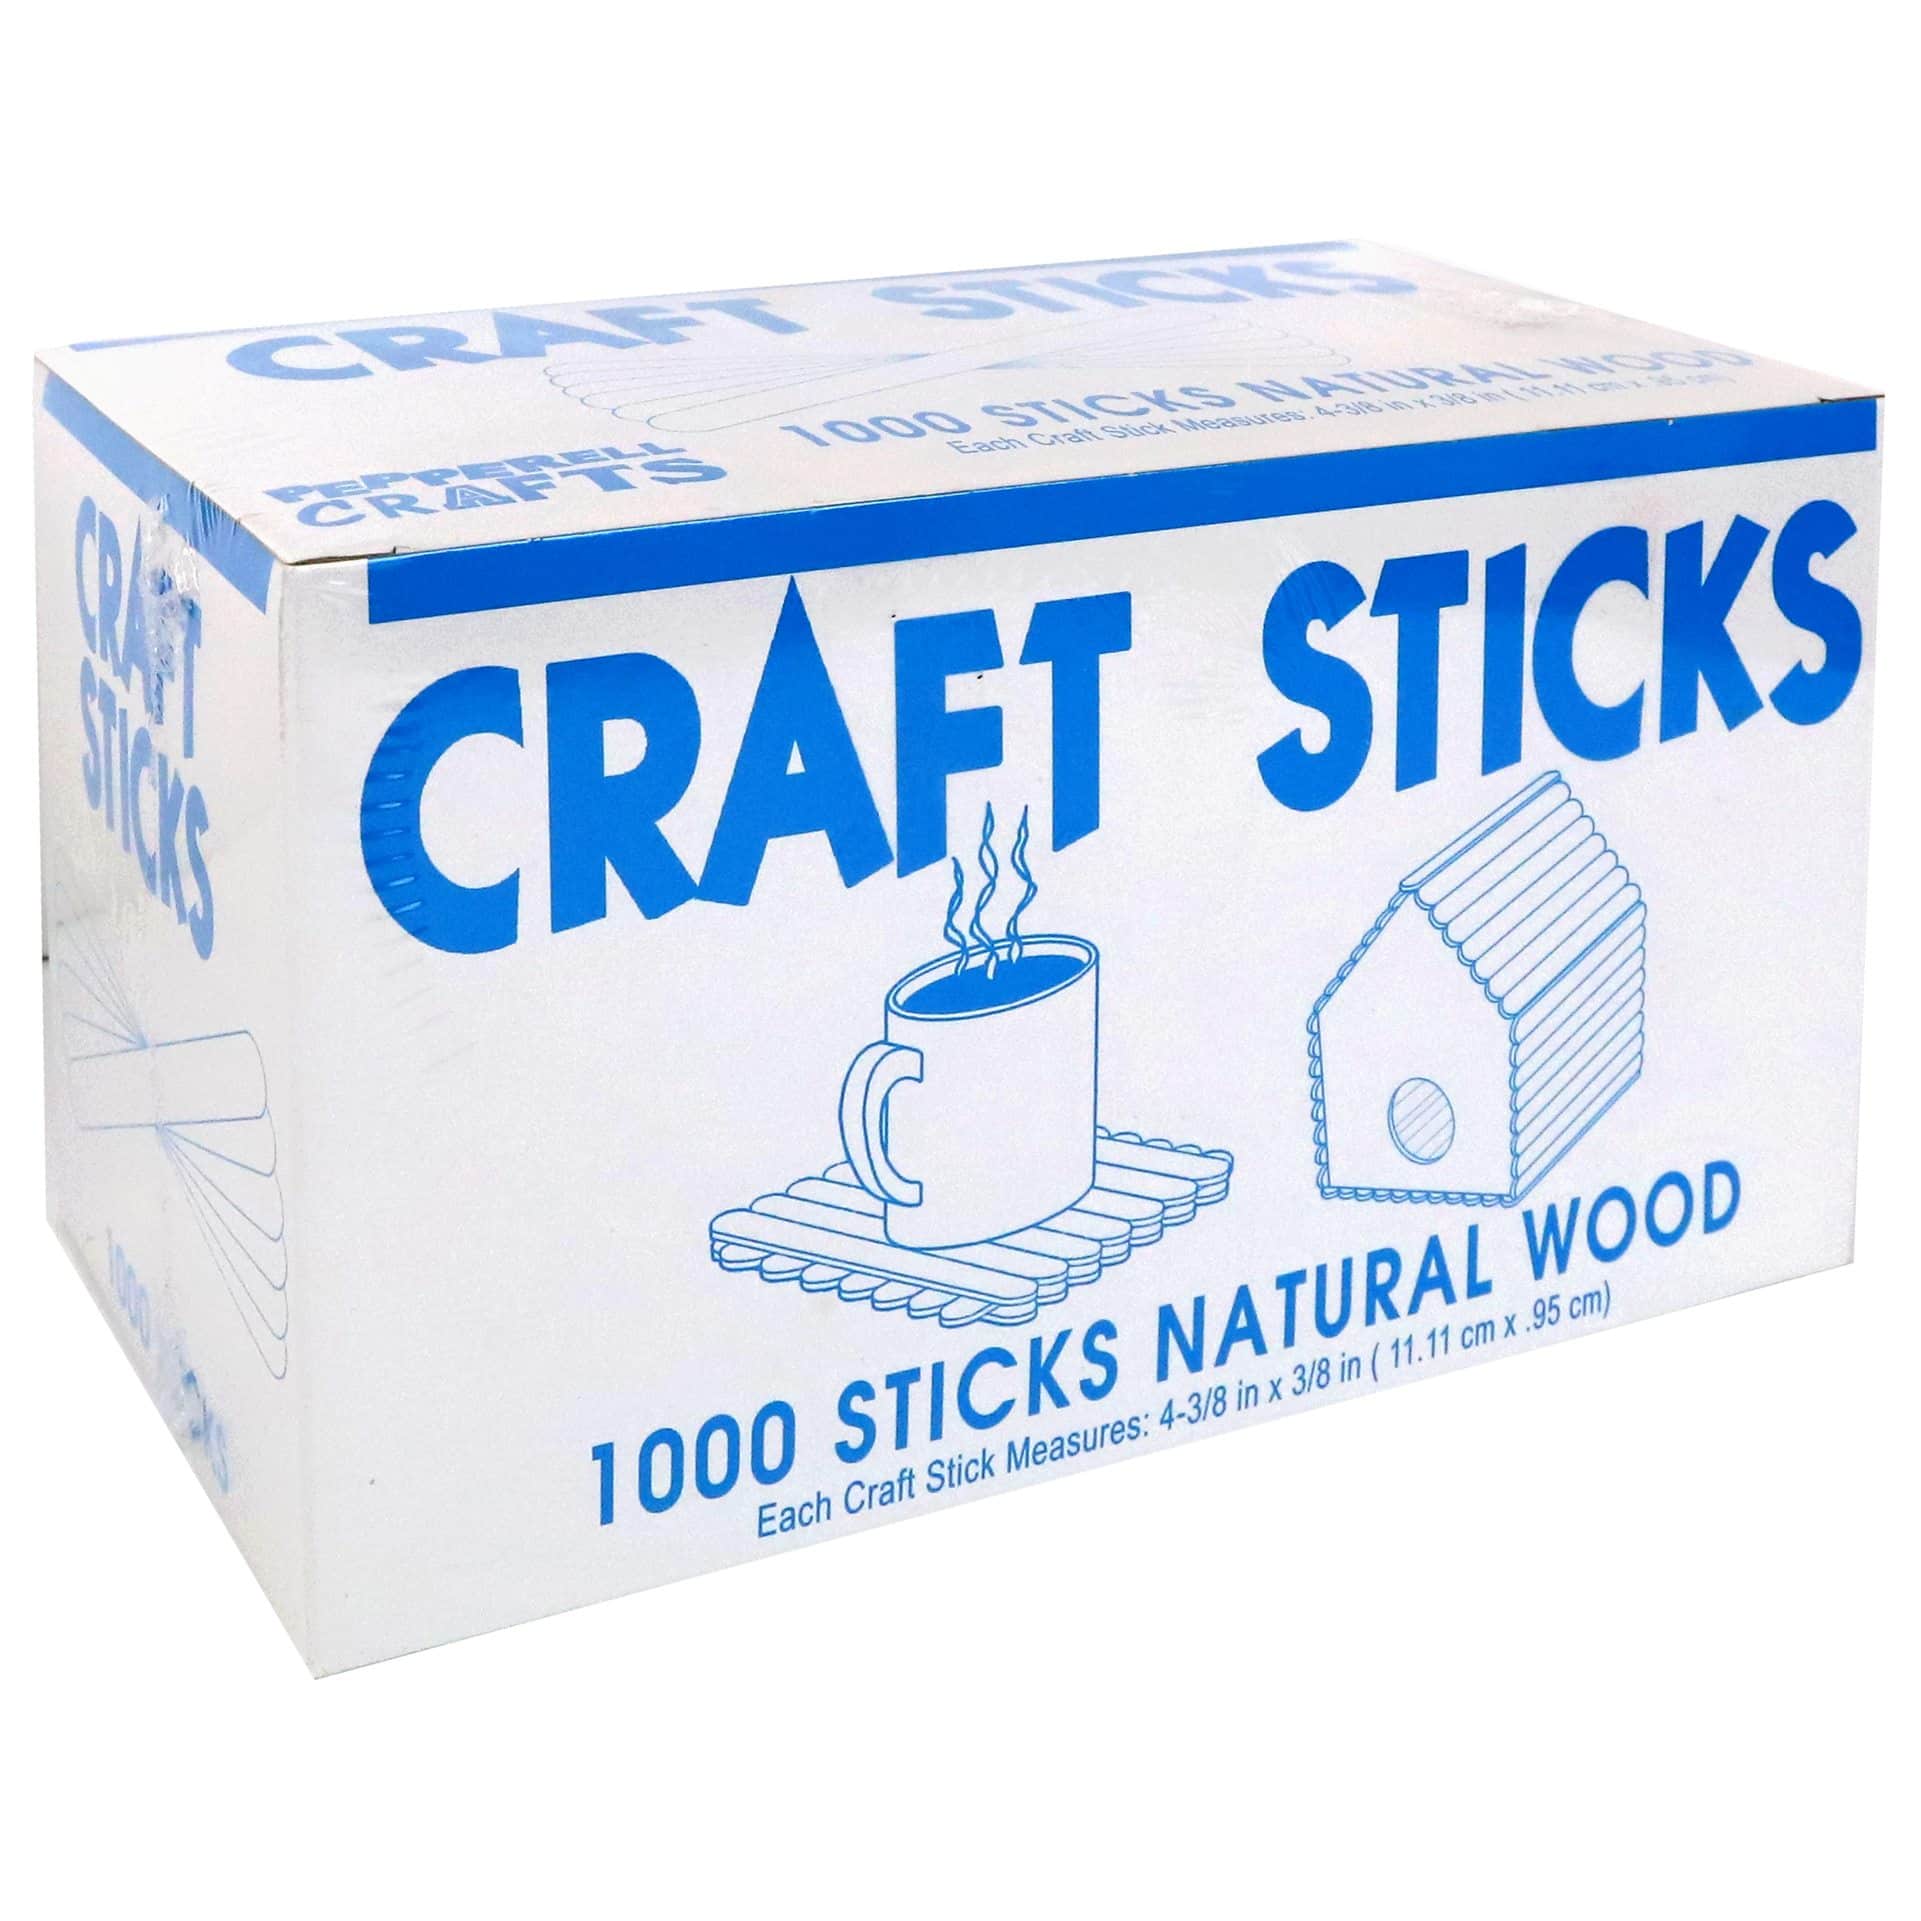 Buy 50 Pcs Wood Applicator Craft Sticks Wood Sticks Wood Waxing Craft  Sticks Bamboo Stick Balsa Wood Strip Small Wax Sticks Online